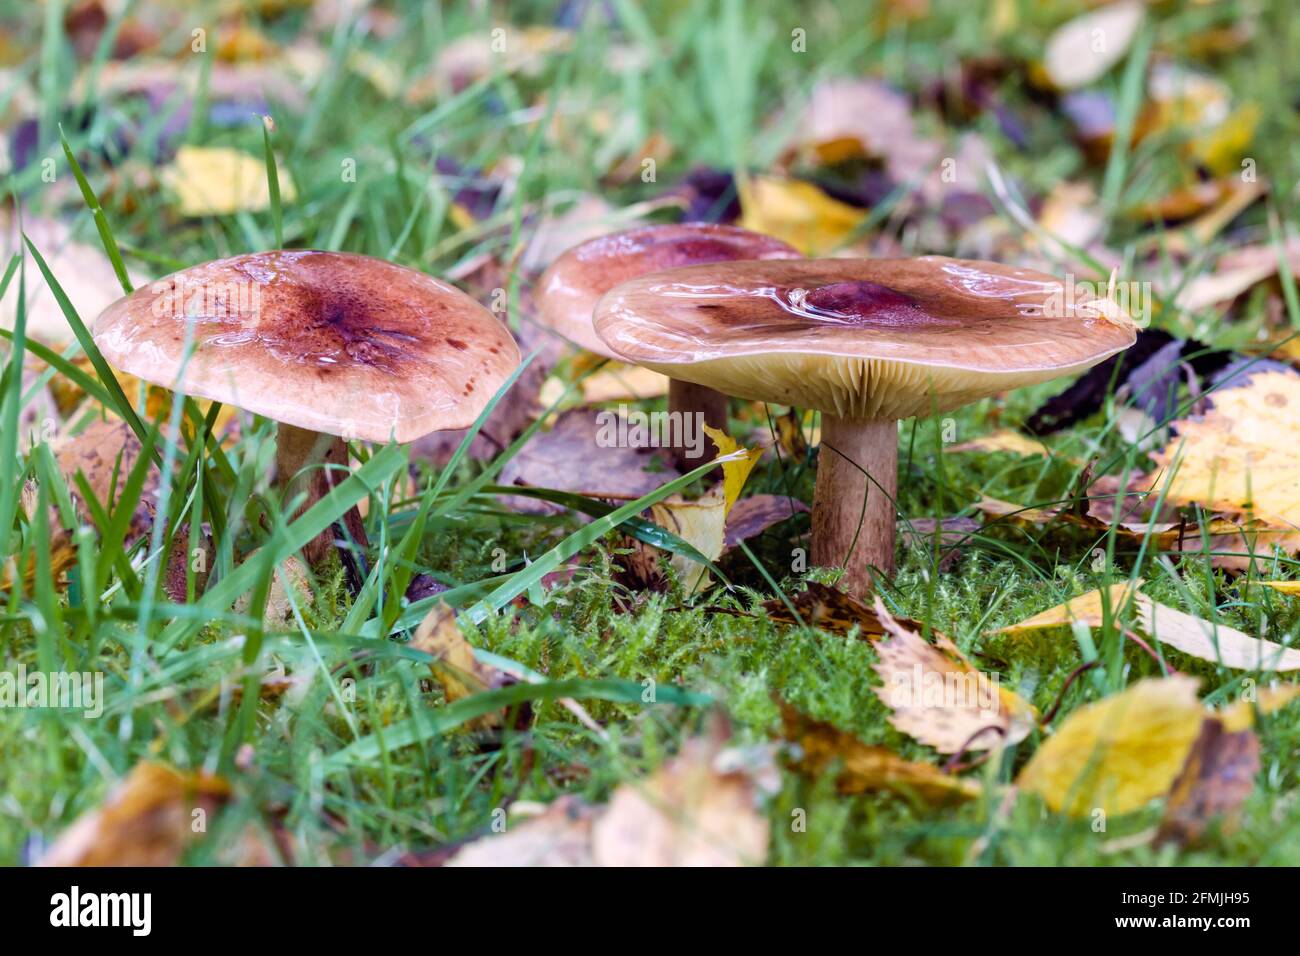 Herald of Winter Hygrophorus hypothejus champignon poussant sur l'herbe dans Les Highlands d'Écosse Banque D'Images